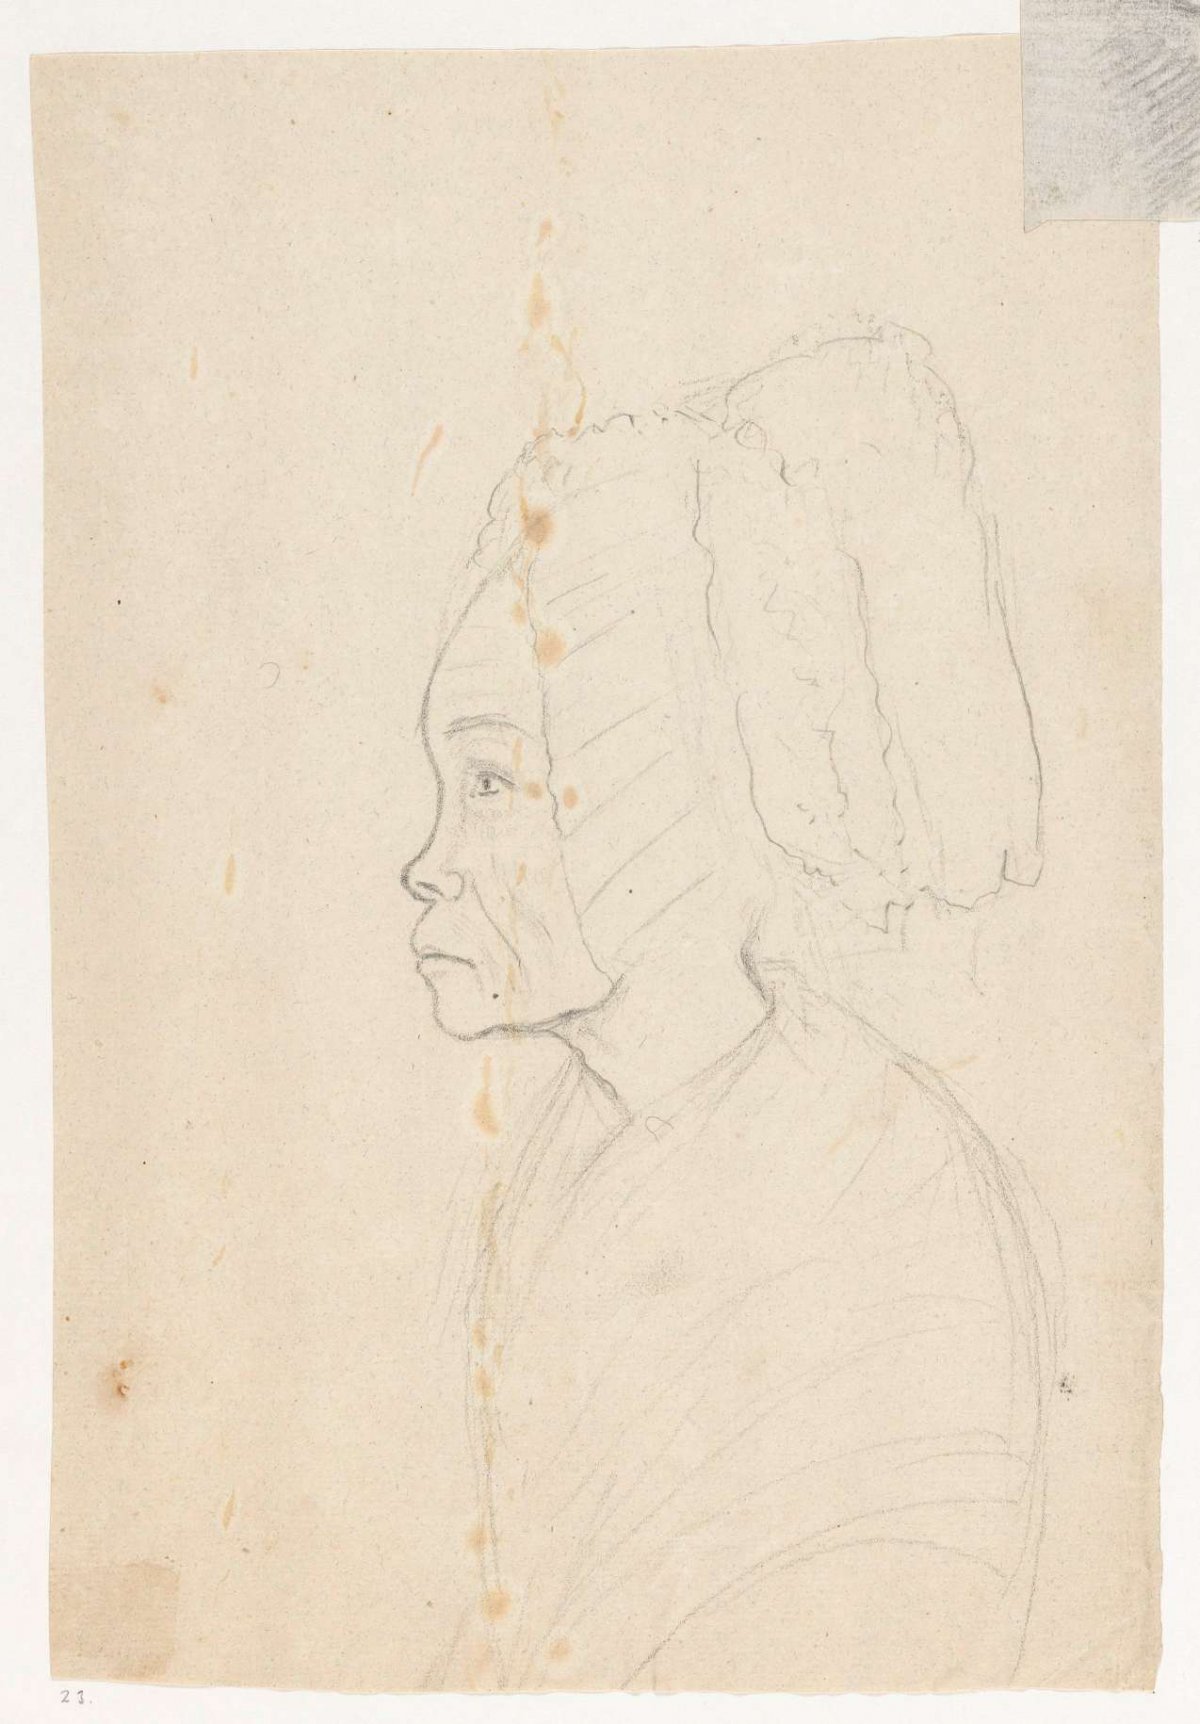 Old Javanese woman, Jan Brandes, 1779 - 1785